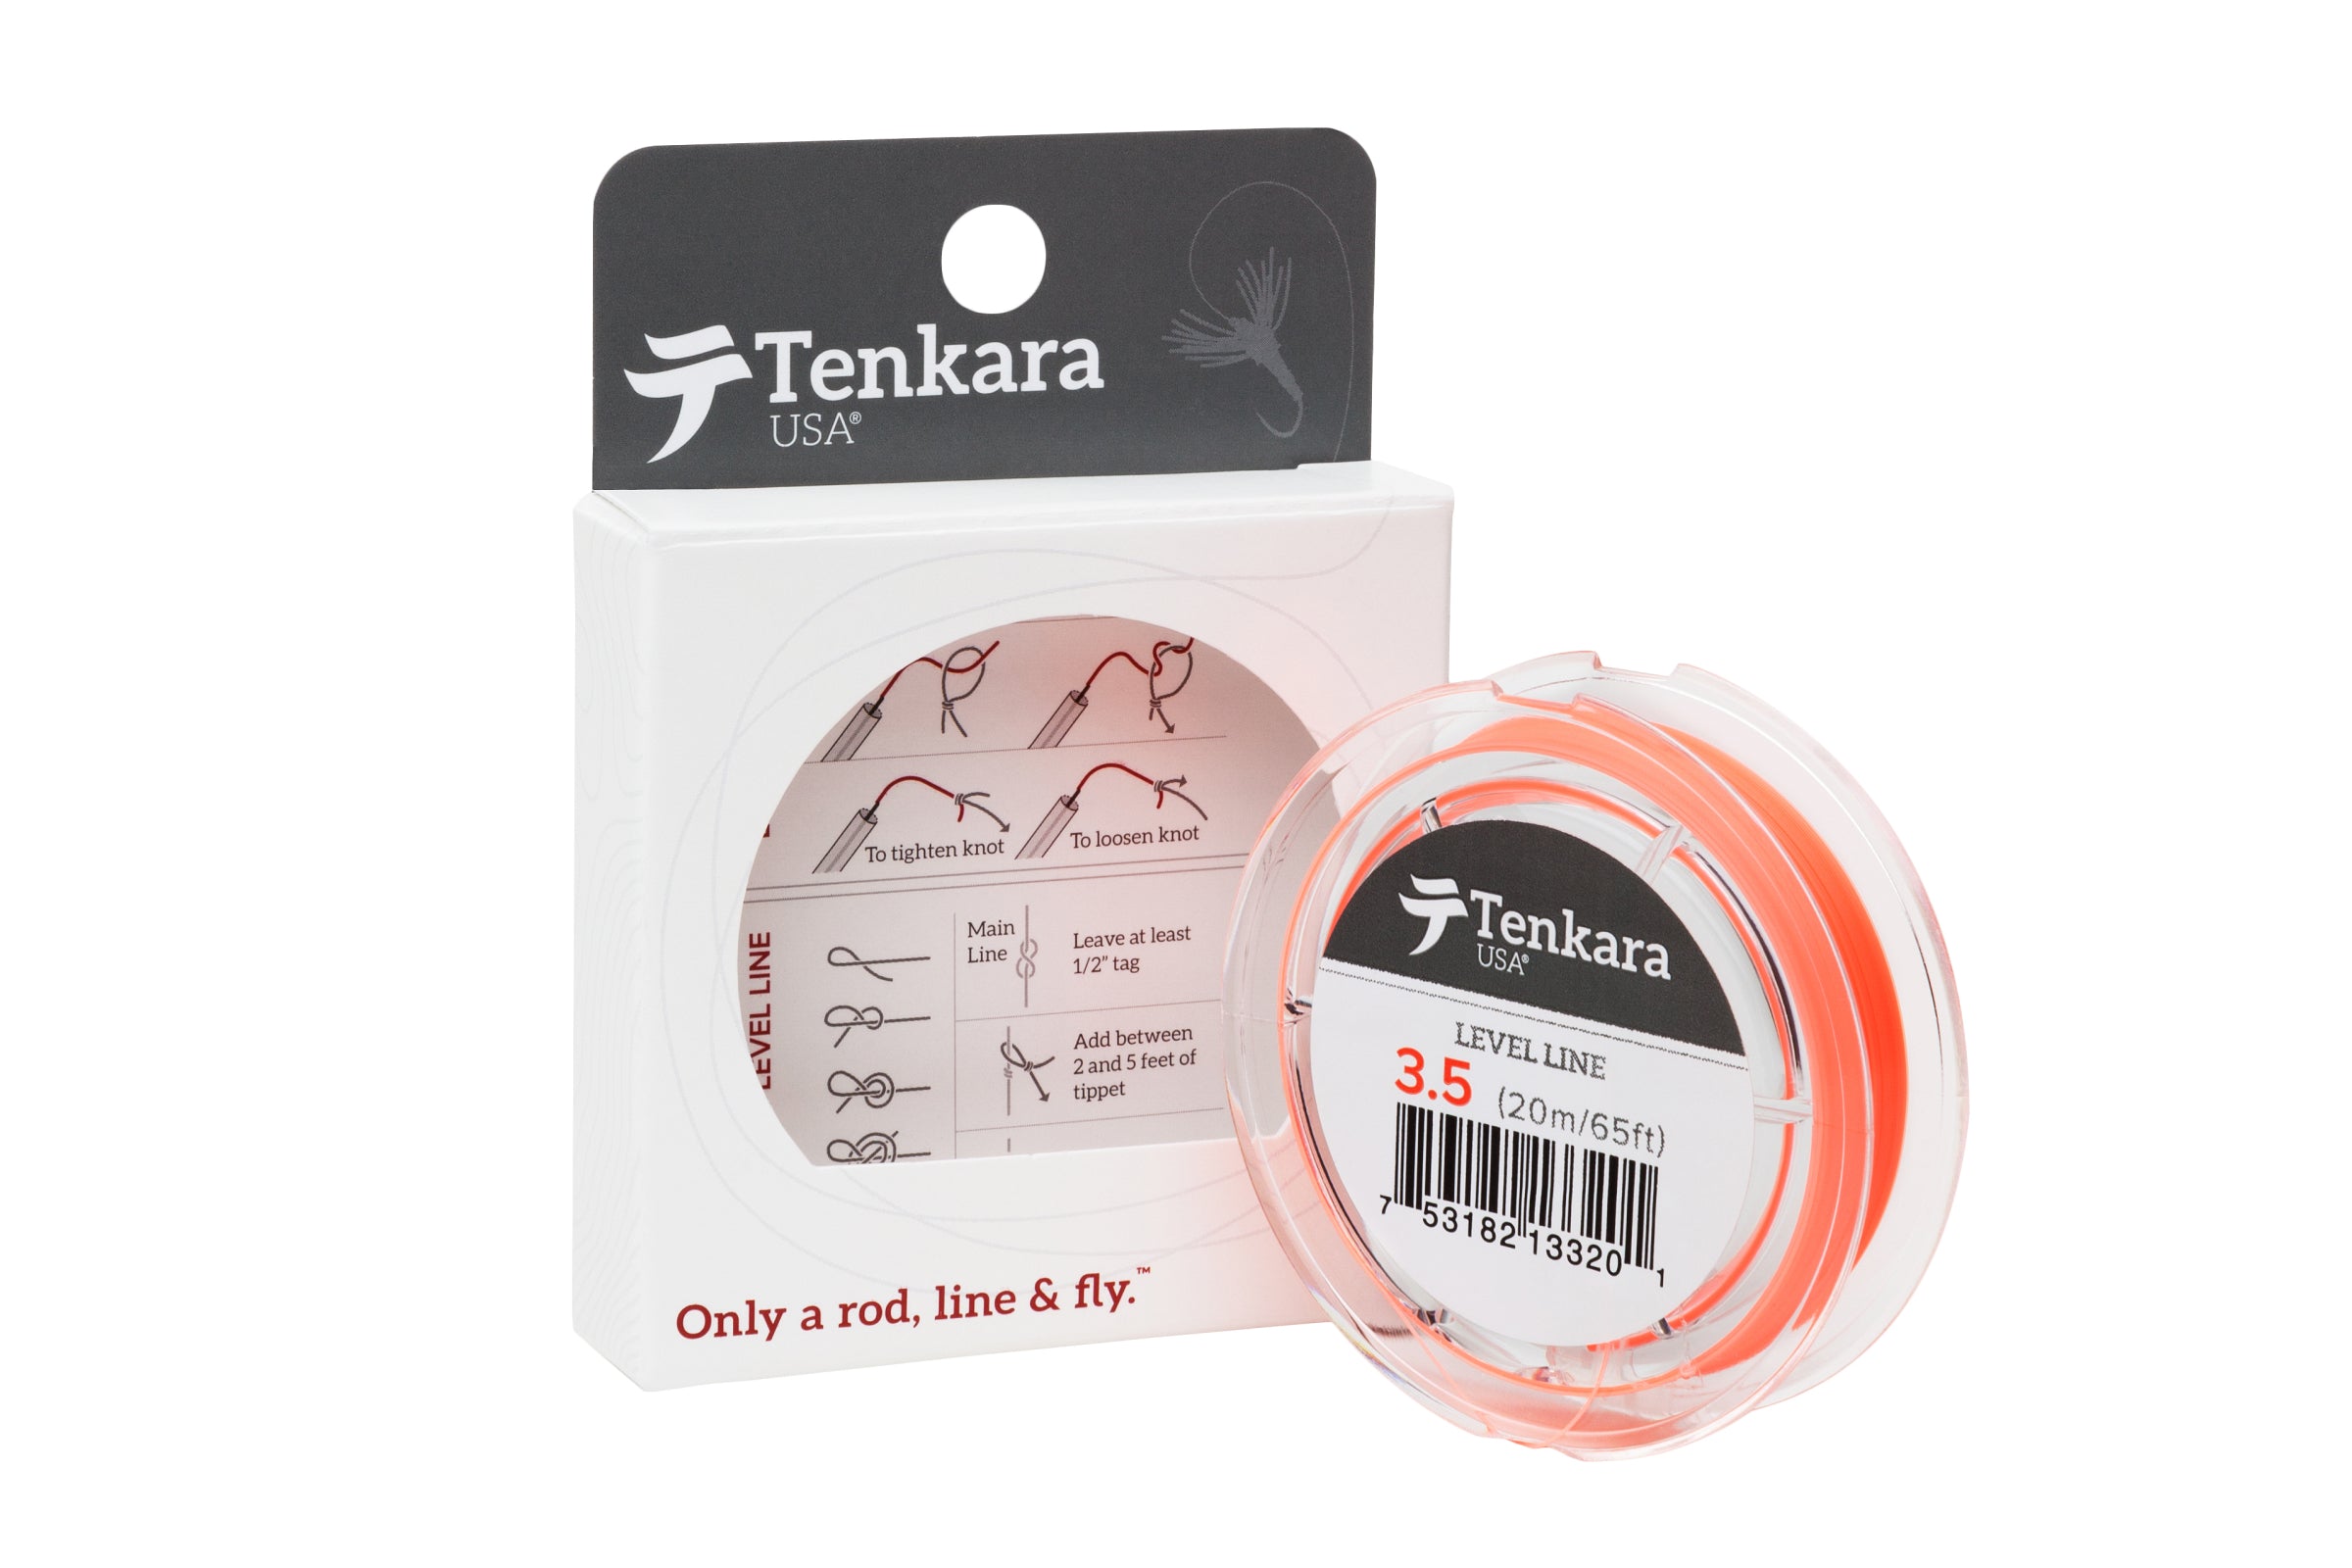 Tenkara Level Line: Choose Length of Level Line for tenkara